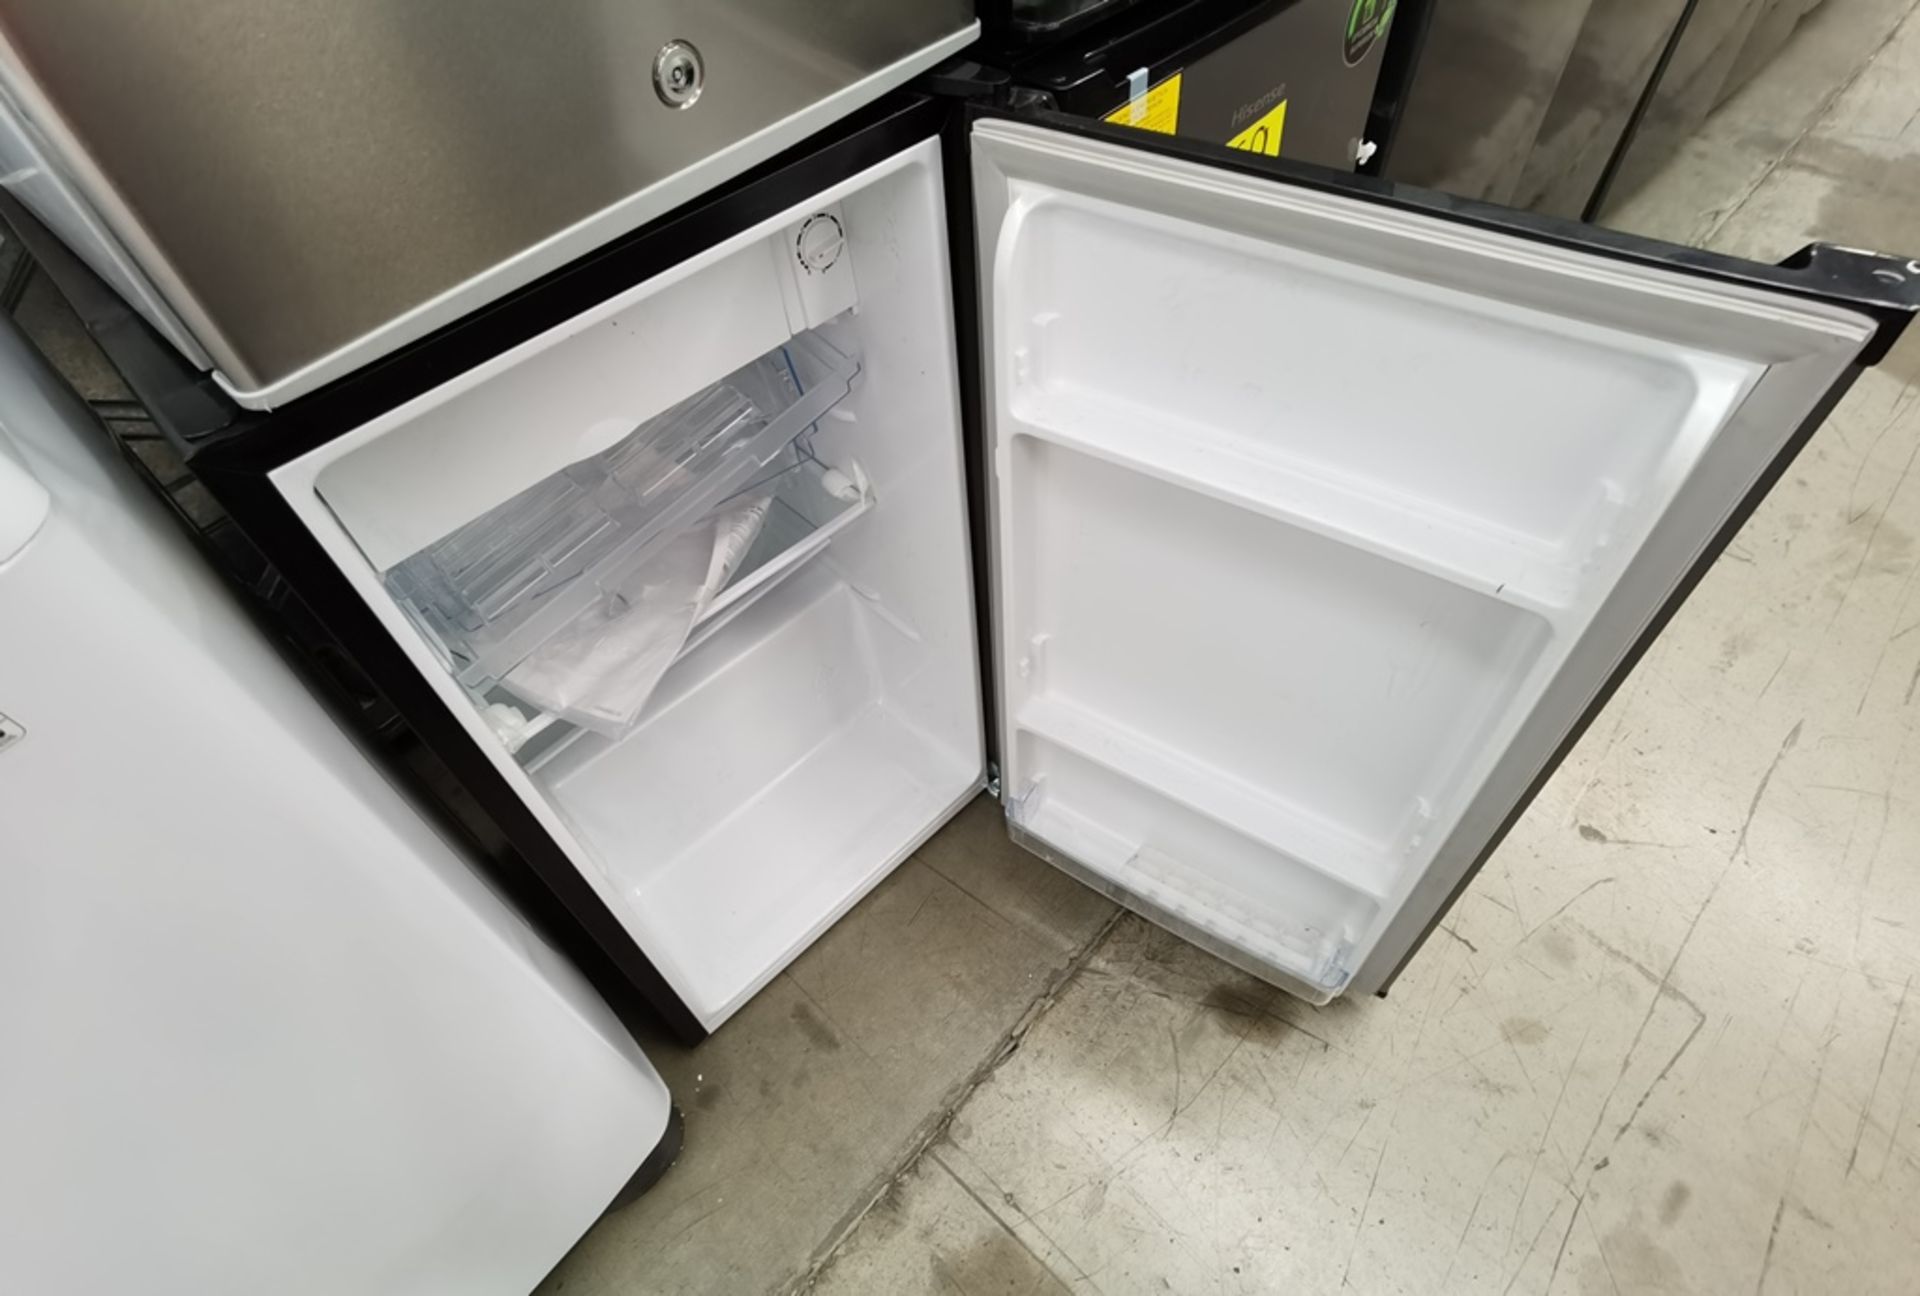 Lote De 4 Refrigeradores Contiene: 1 Refrigerador Marca Atvio, Modelo BC90SU, Serie N/D, Color Gris - Image 10 of 11